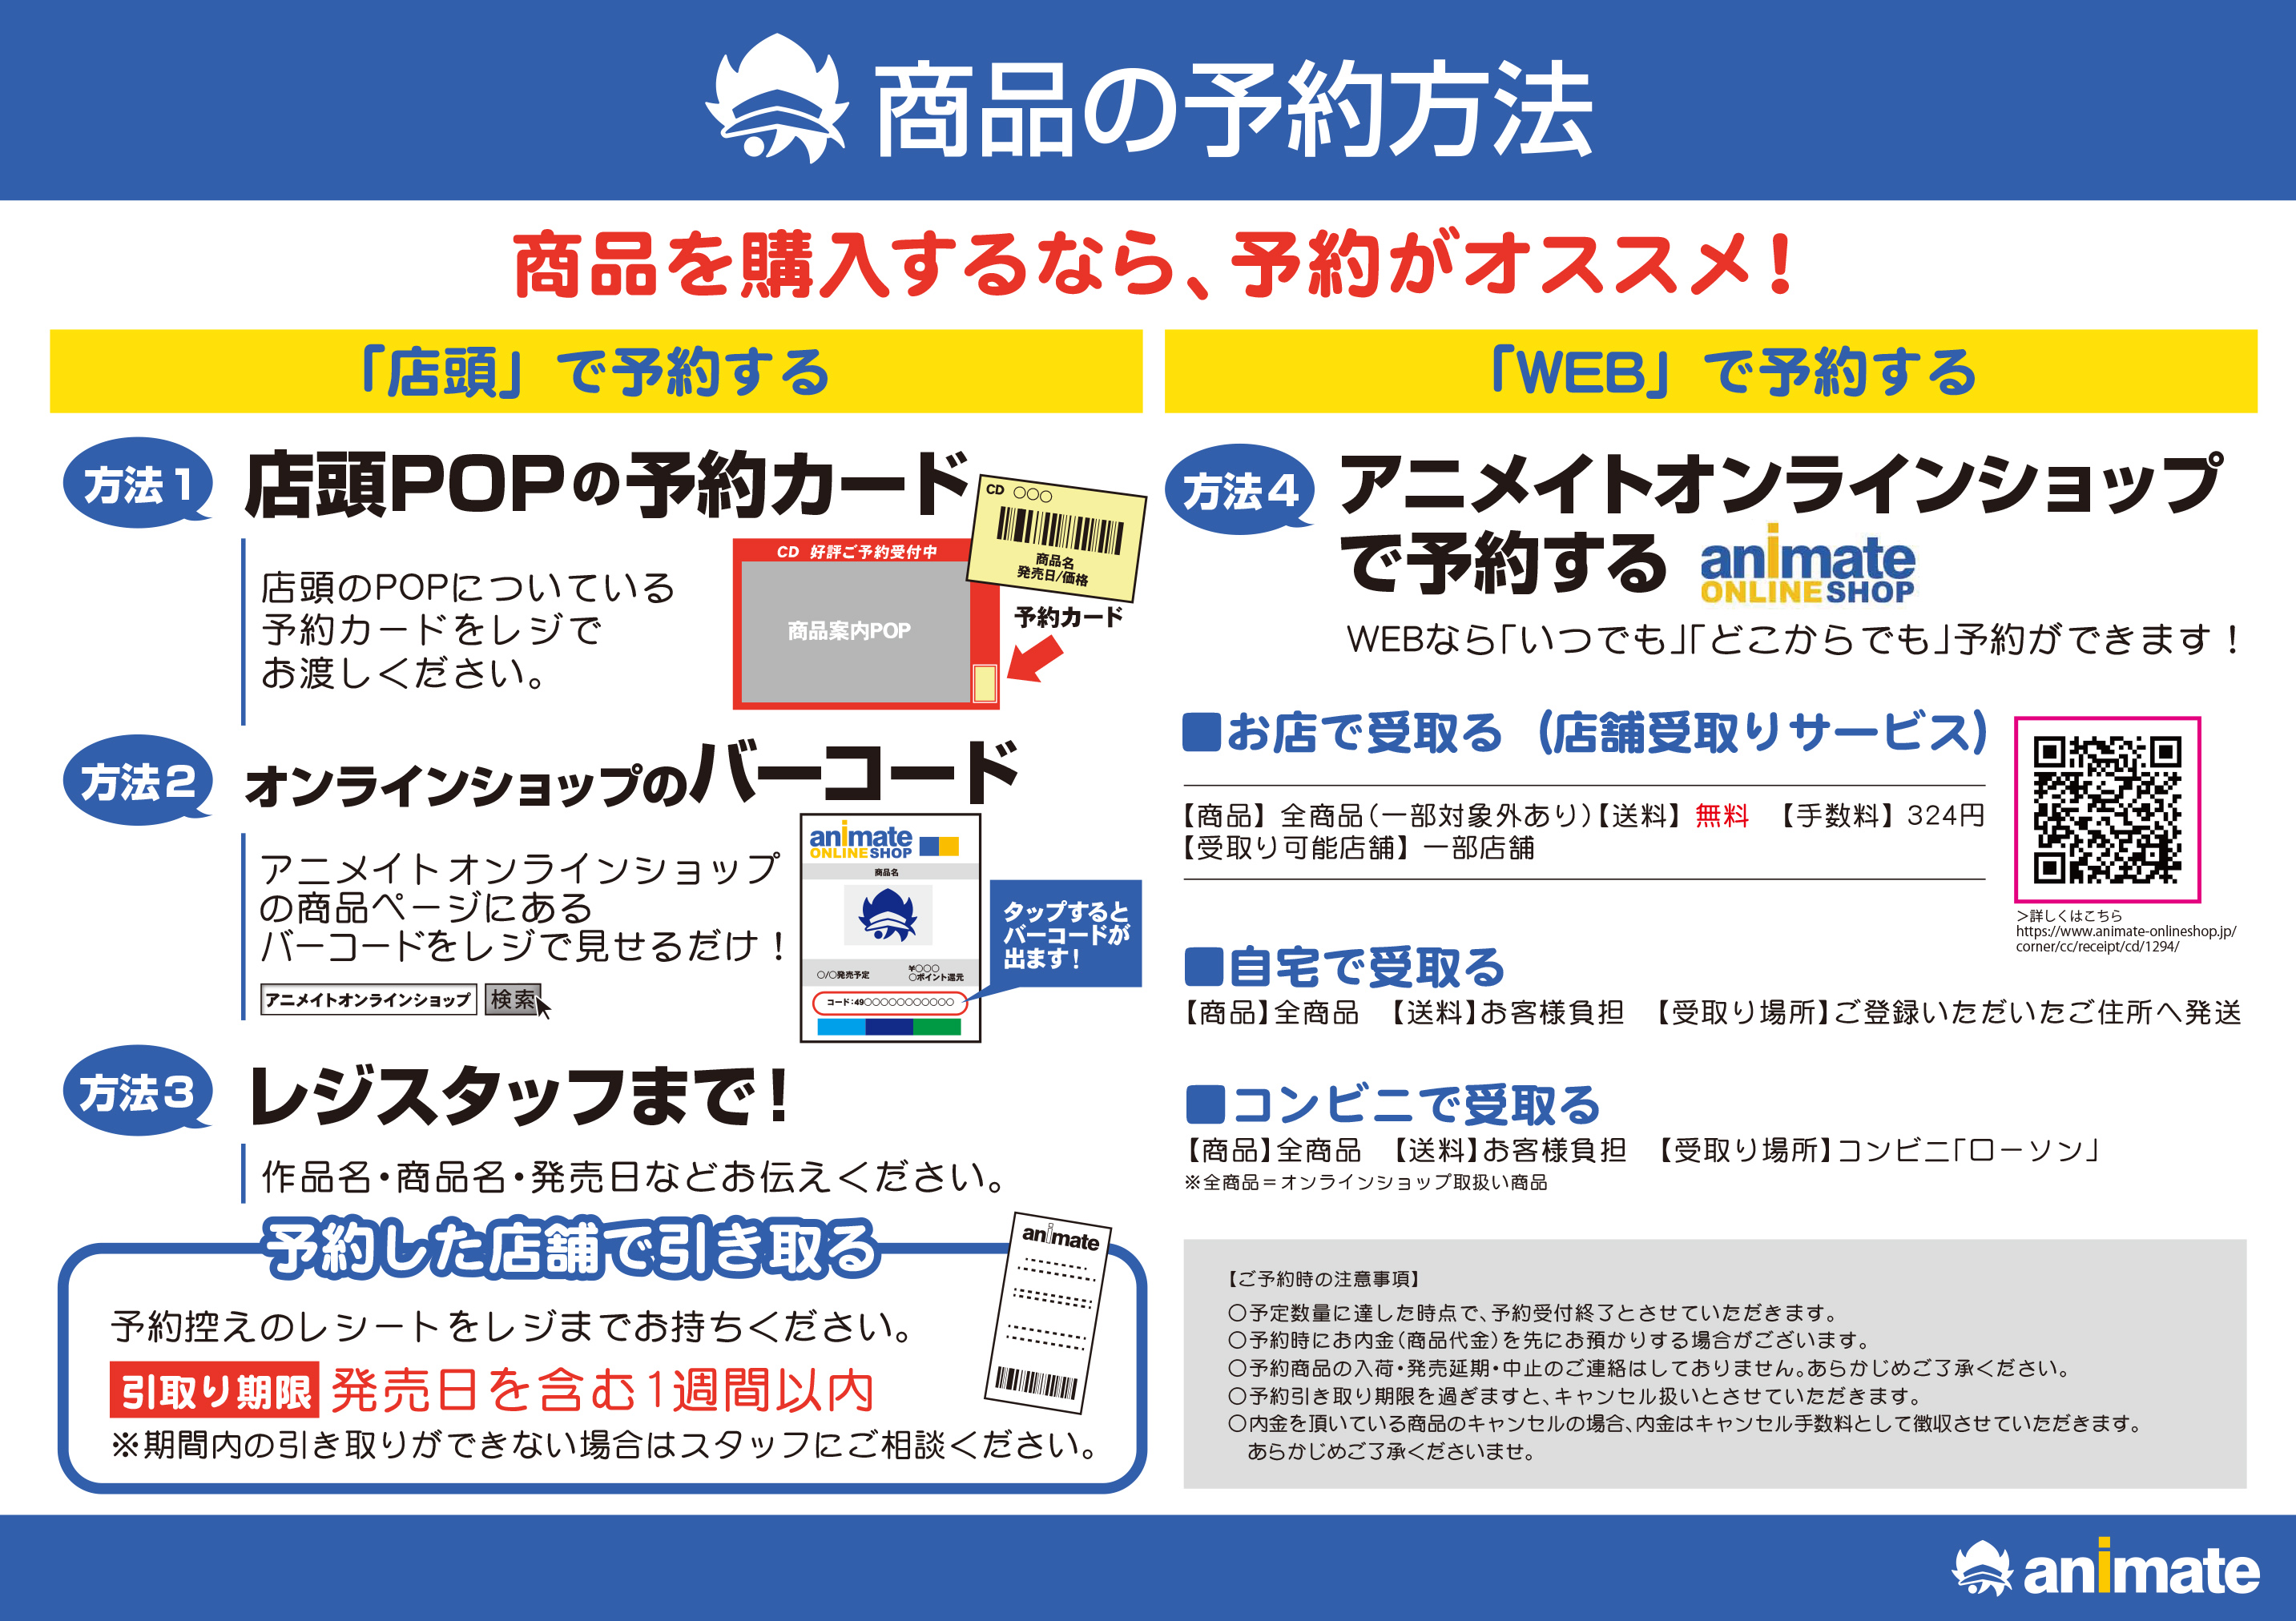 ご案内 19年4月8日 月 からのご予約方法について アニメイト渋谷